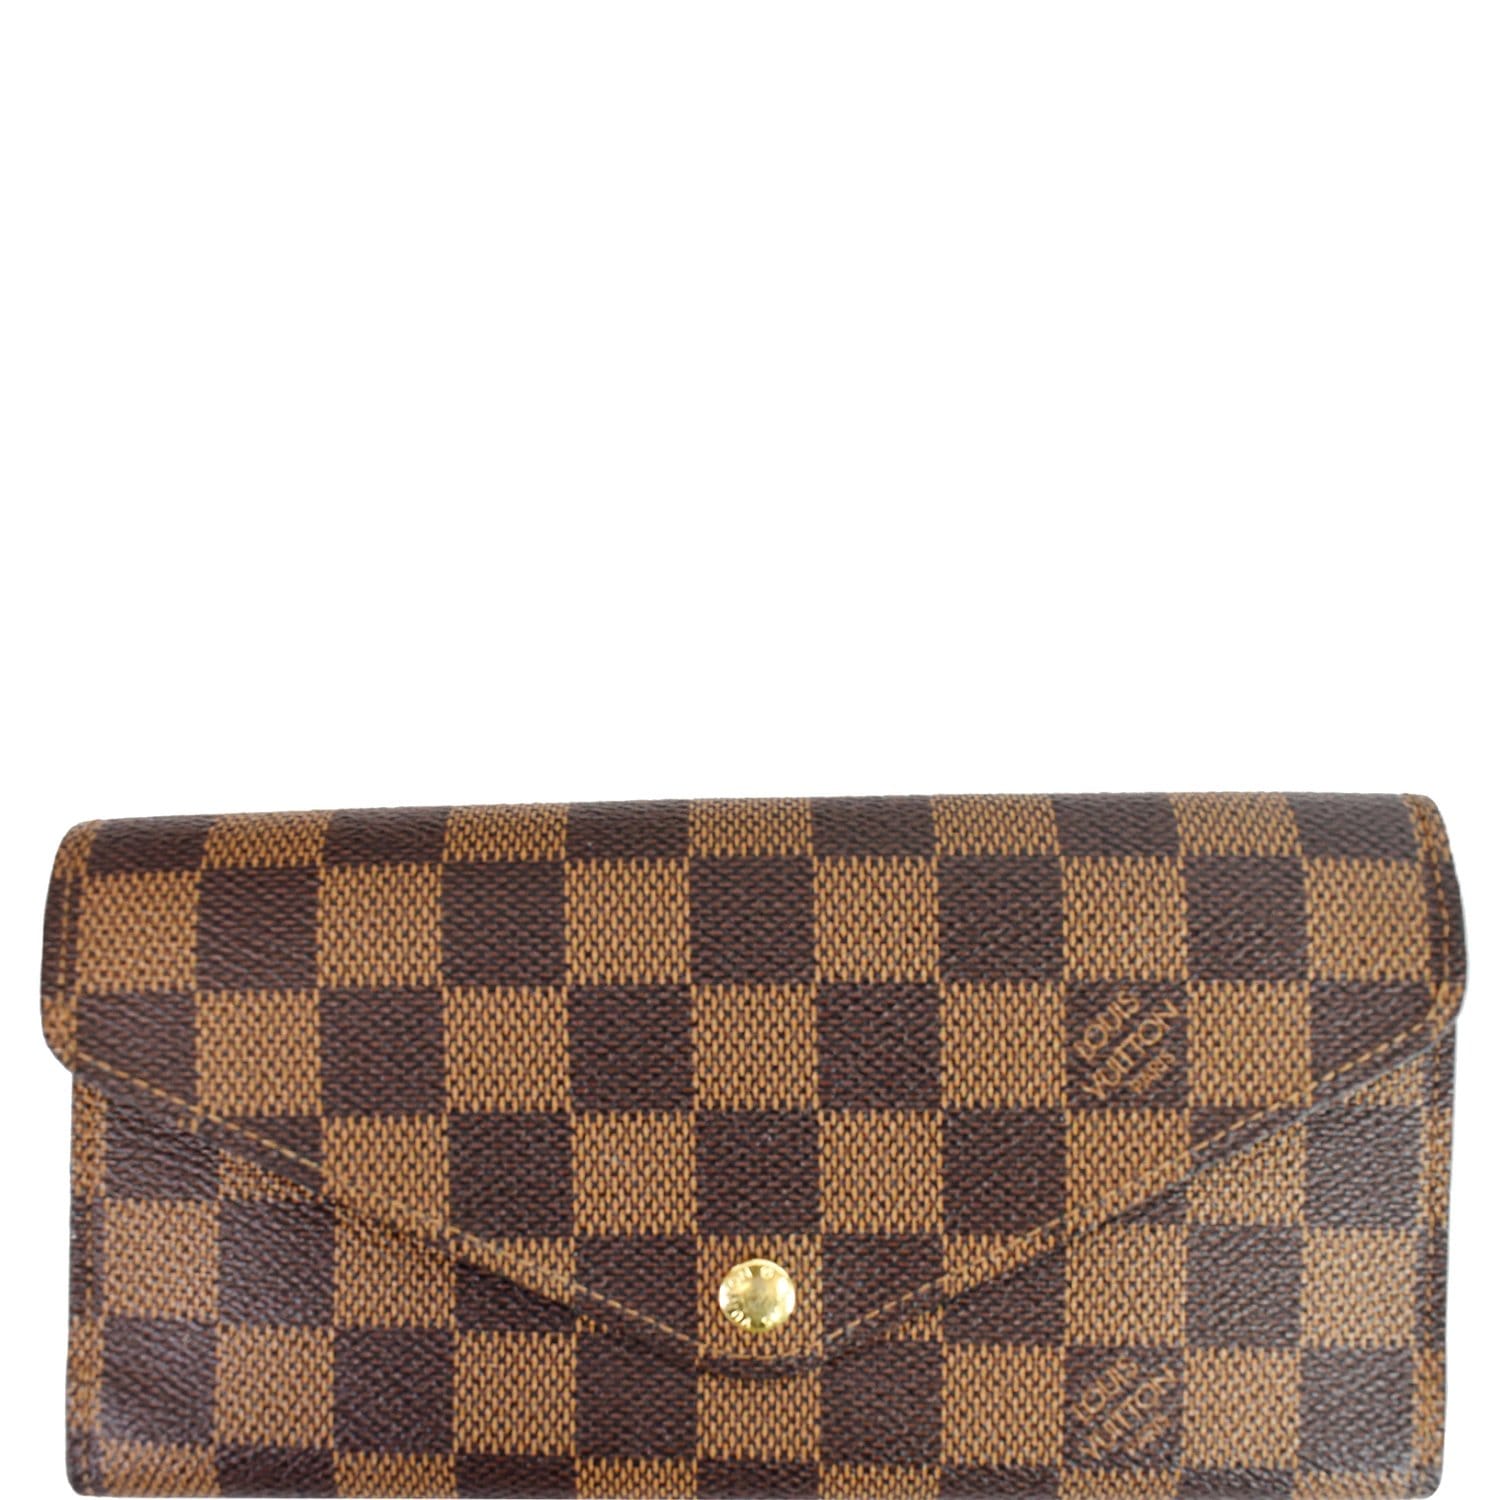 Authentic LOUIS VUITTON LV Vintage Check Damier Sarah Wallet Envelope  Leather